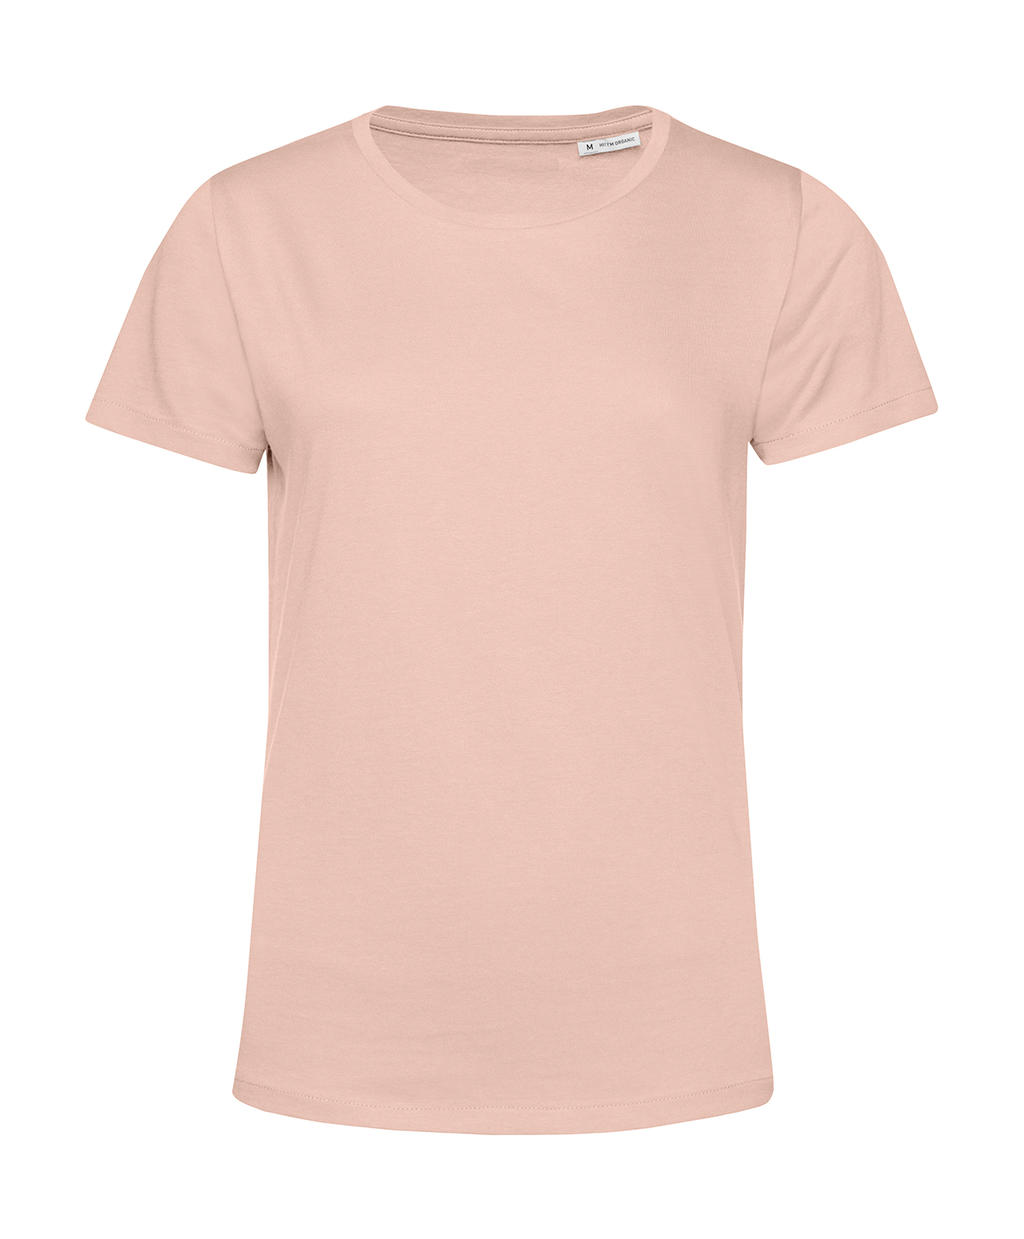 Tričko dámské BC Organic Inspire E150 - světle růžové, L